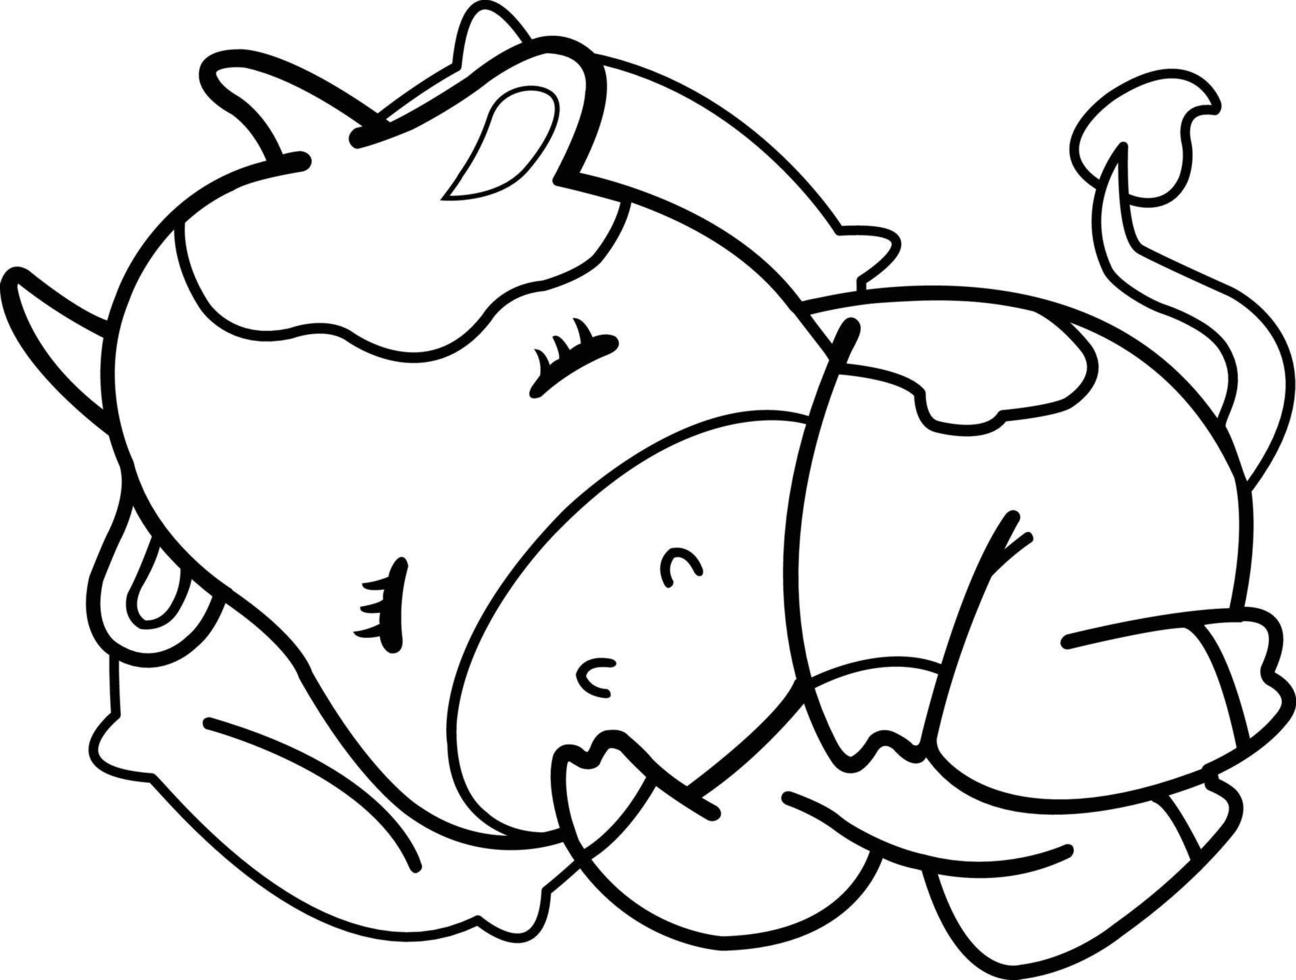 süße Kuhskizze, die friedlich mit einem Kissen unter dem Kopf schläft. Tier- und Kinderthemaillustration vektor